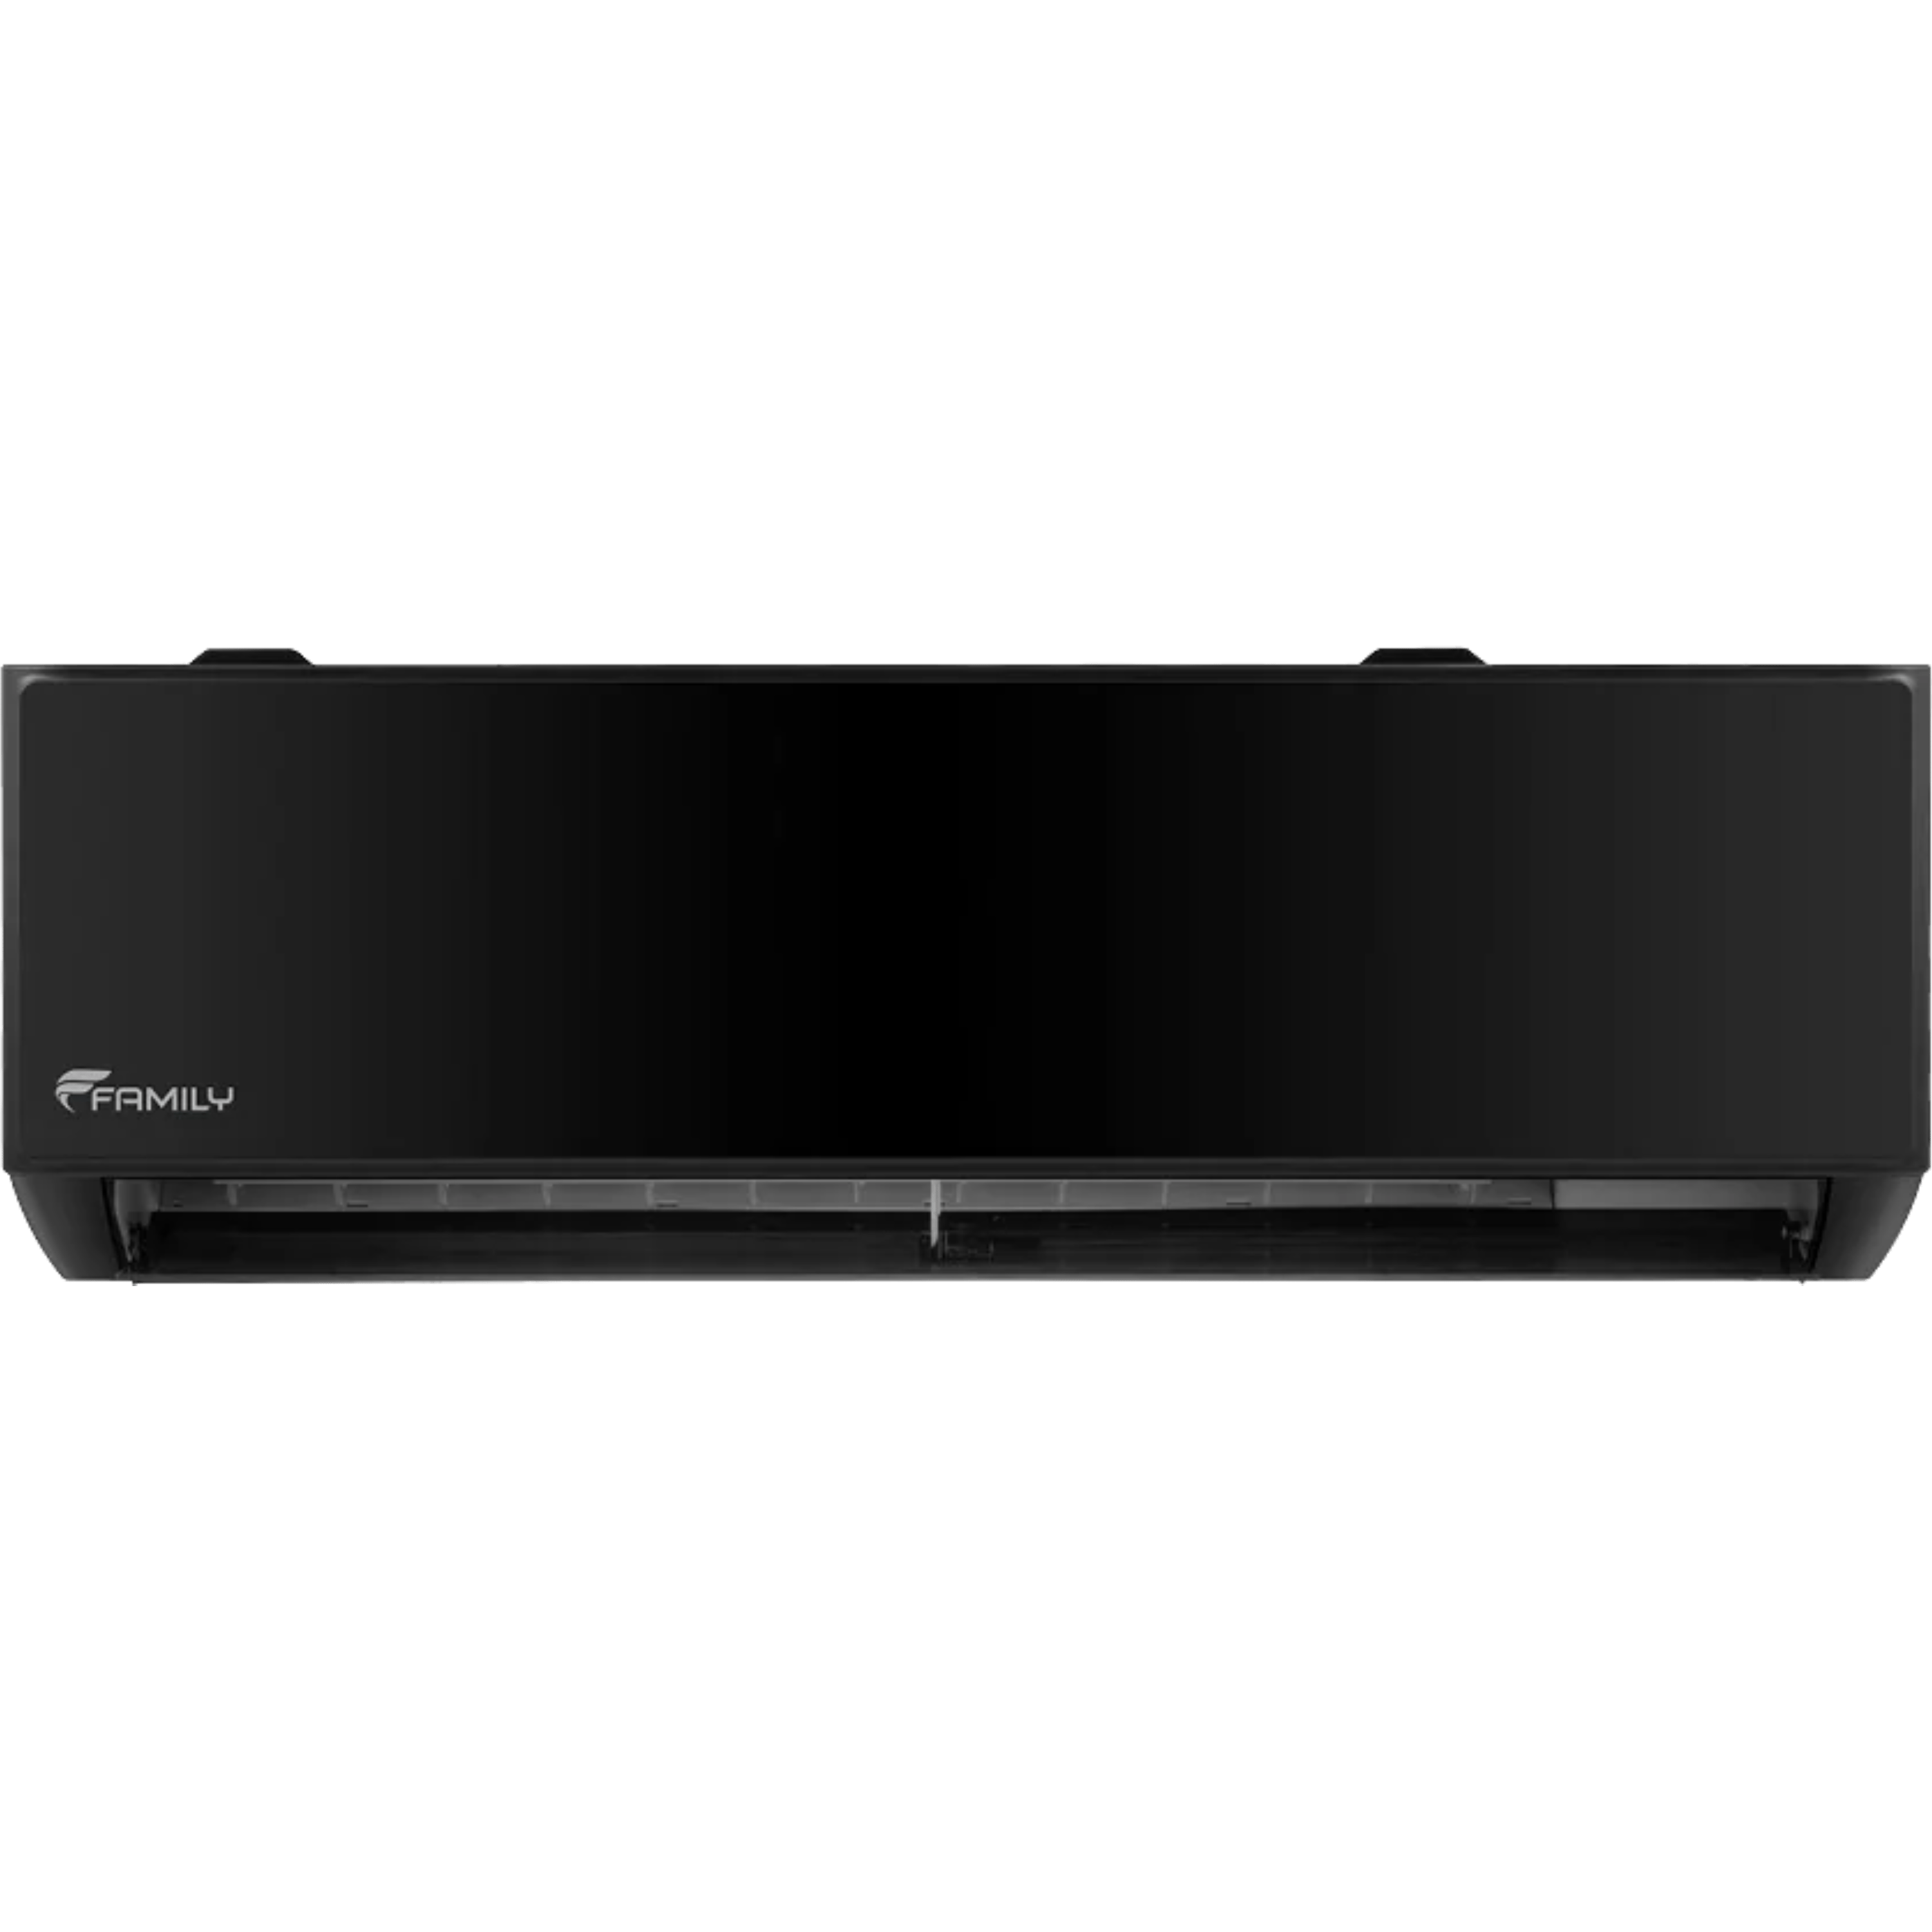 מזגן עילי Family Premium Black inverter WiFi 16 - צבע שחור שבע שנות אחריות ע